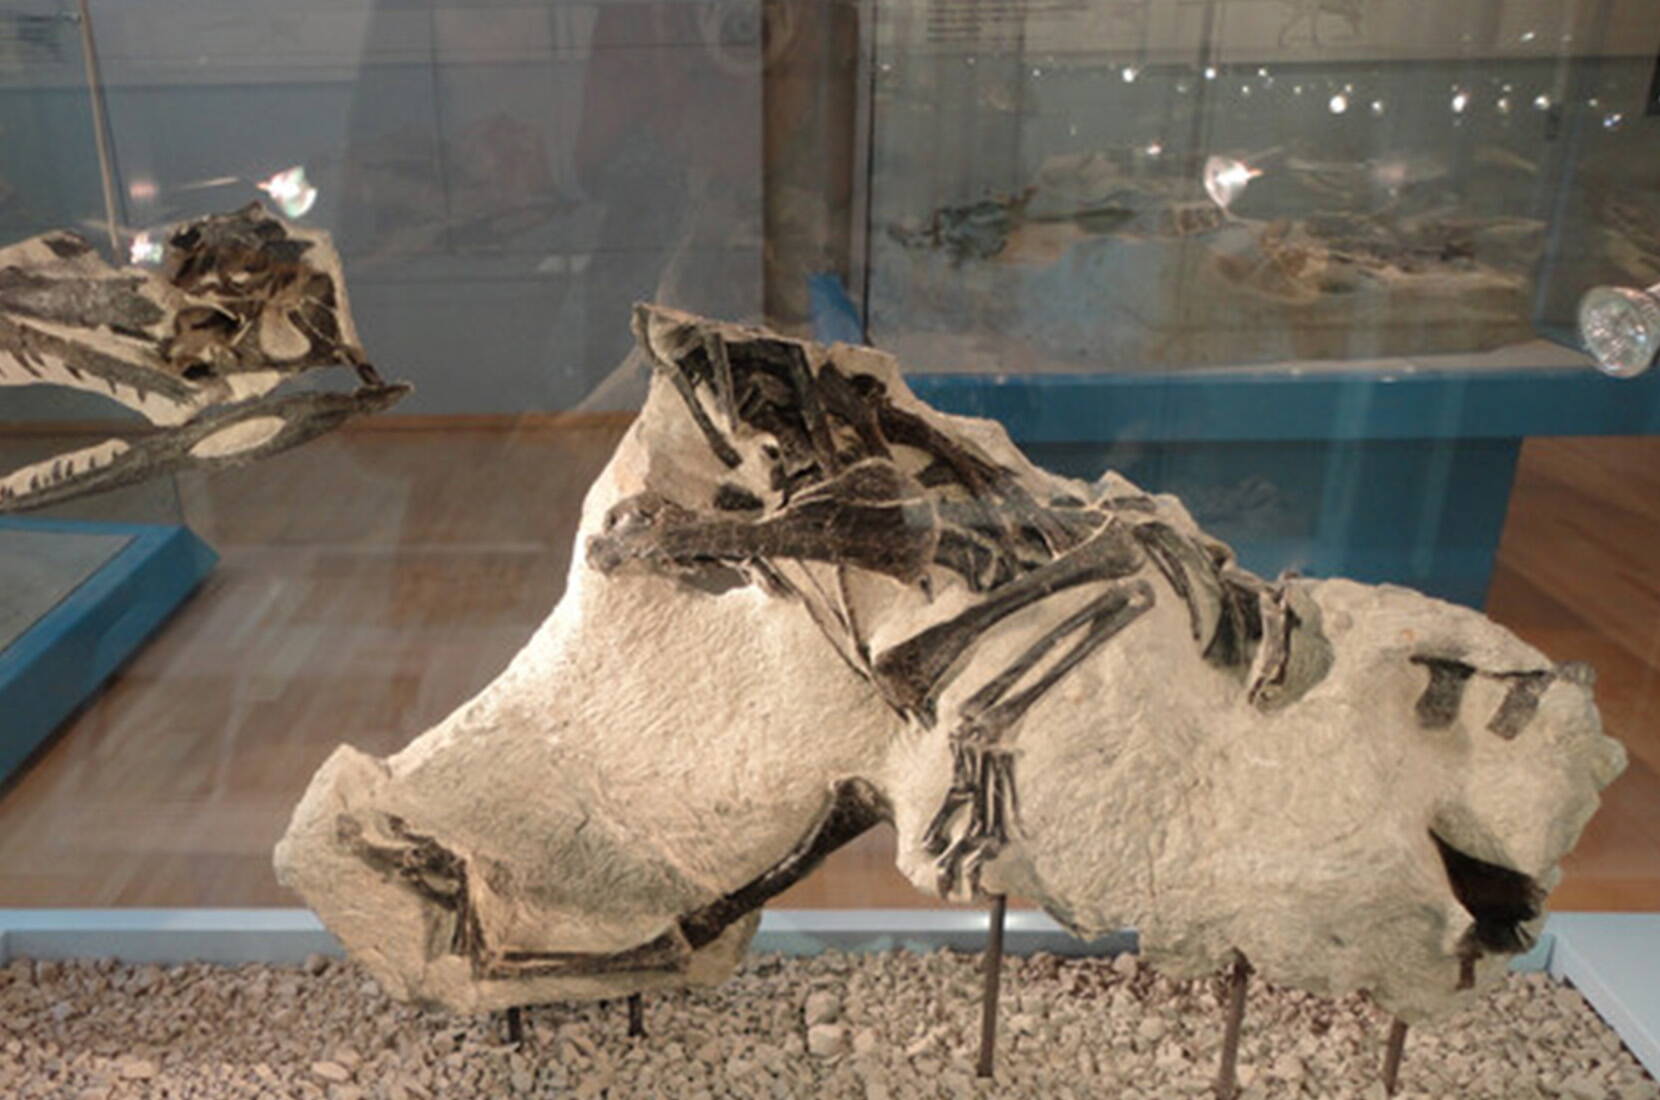 Bon pour une entrée gratuite au Musée des dinosaures de Frick. Télécharge ton bon pour une entrée gratuite et prépare-toi pour une excursion dans le passé. Le Musée des dinosaures de Frick te montre de près surtout des ossements de dinosaures dits "à plaques" de l'époque du Trias, dont le squelette de dinosaure le plus complet jamais trouvé en Suisse.